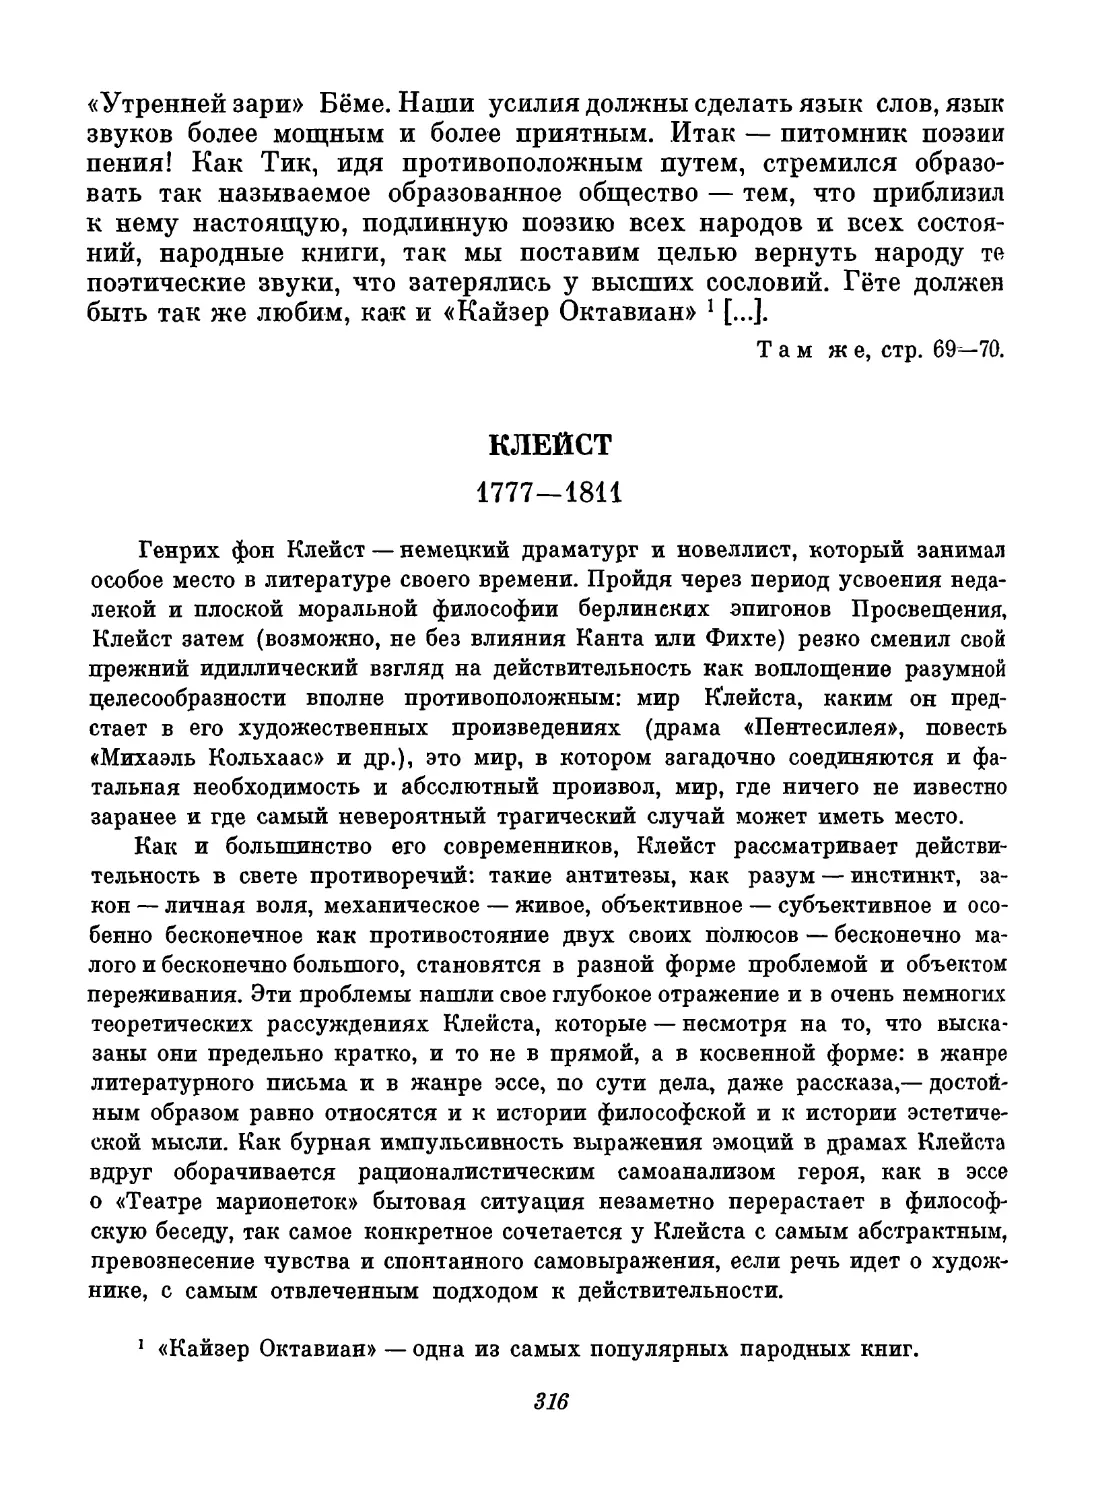 Клейст. Составление, вступительный текст и перевод Ал. В. Михайлова